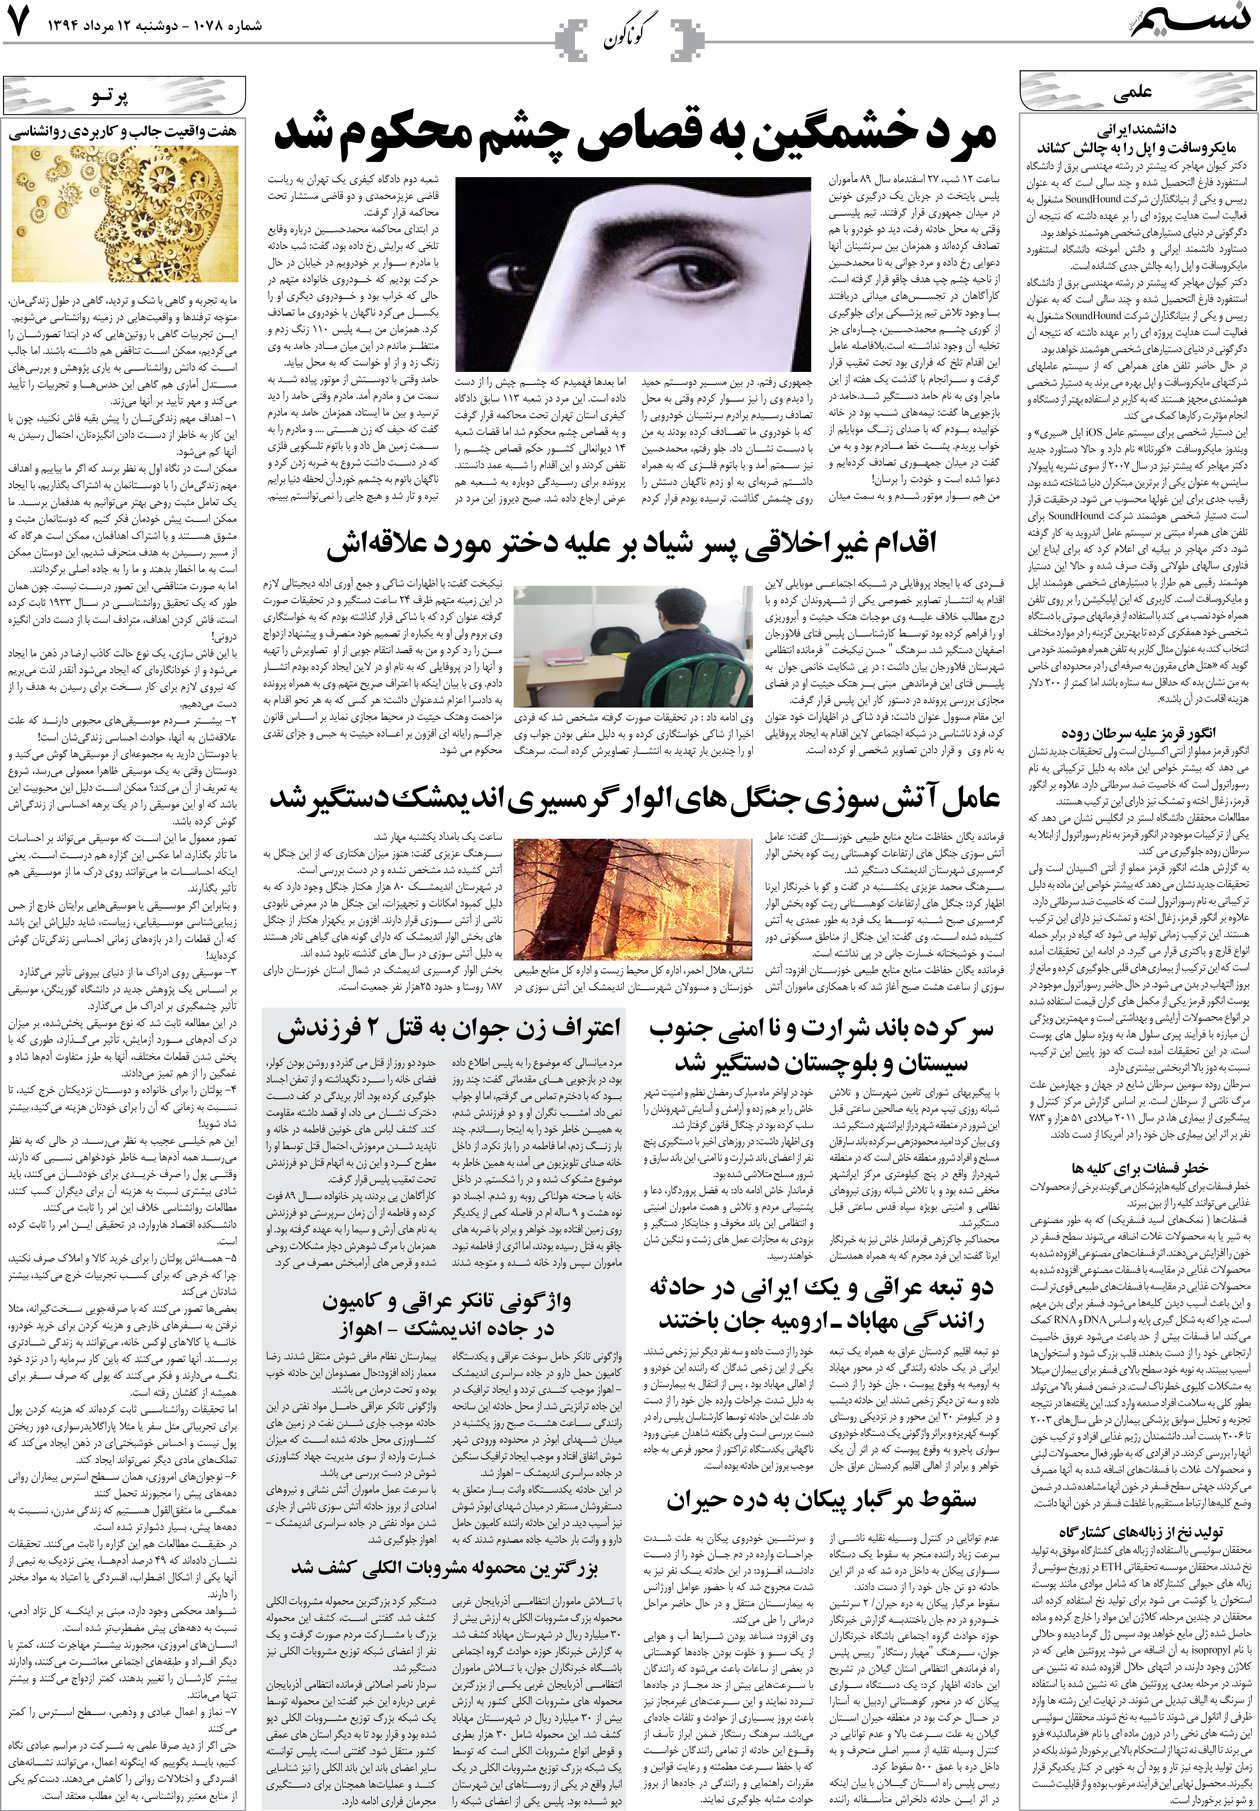 صفحه گوناگون روزنامه نسیم شماره 1078